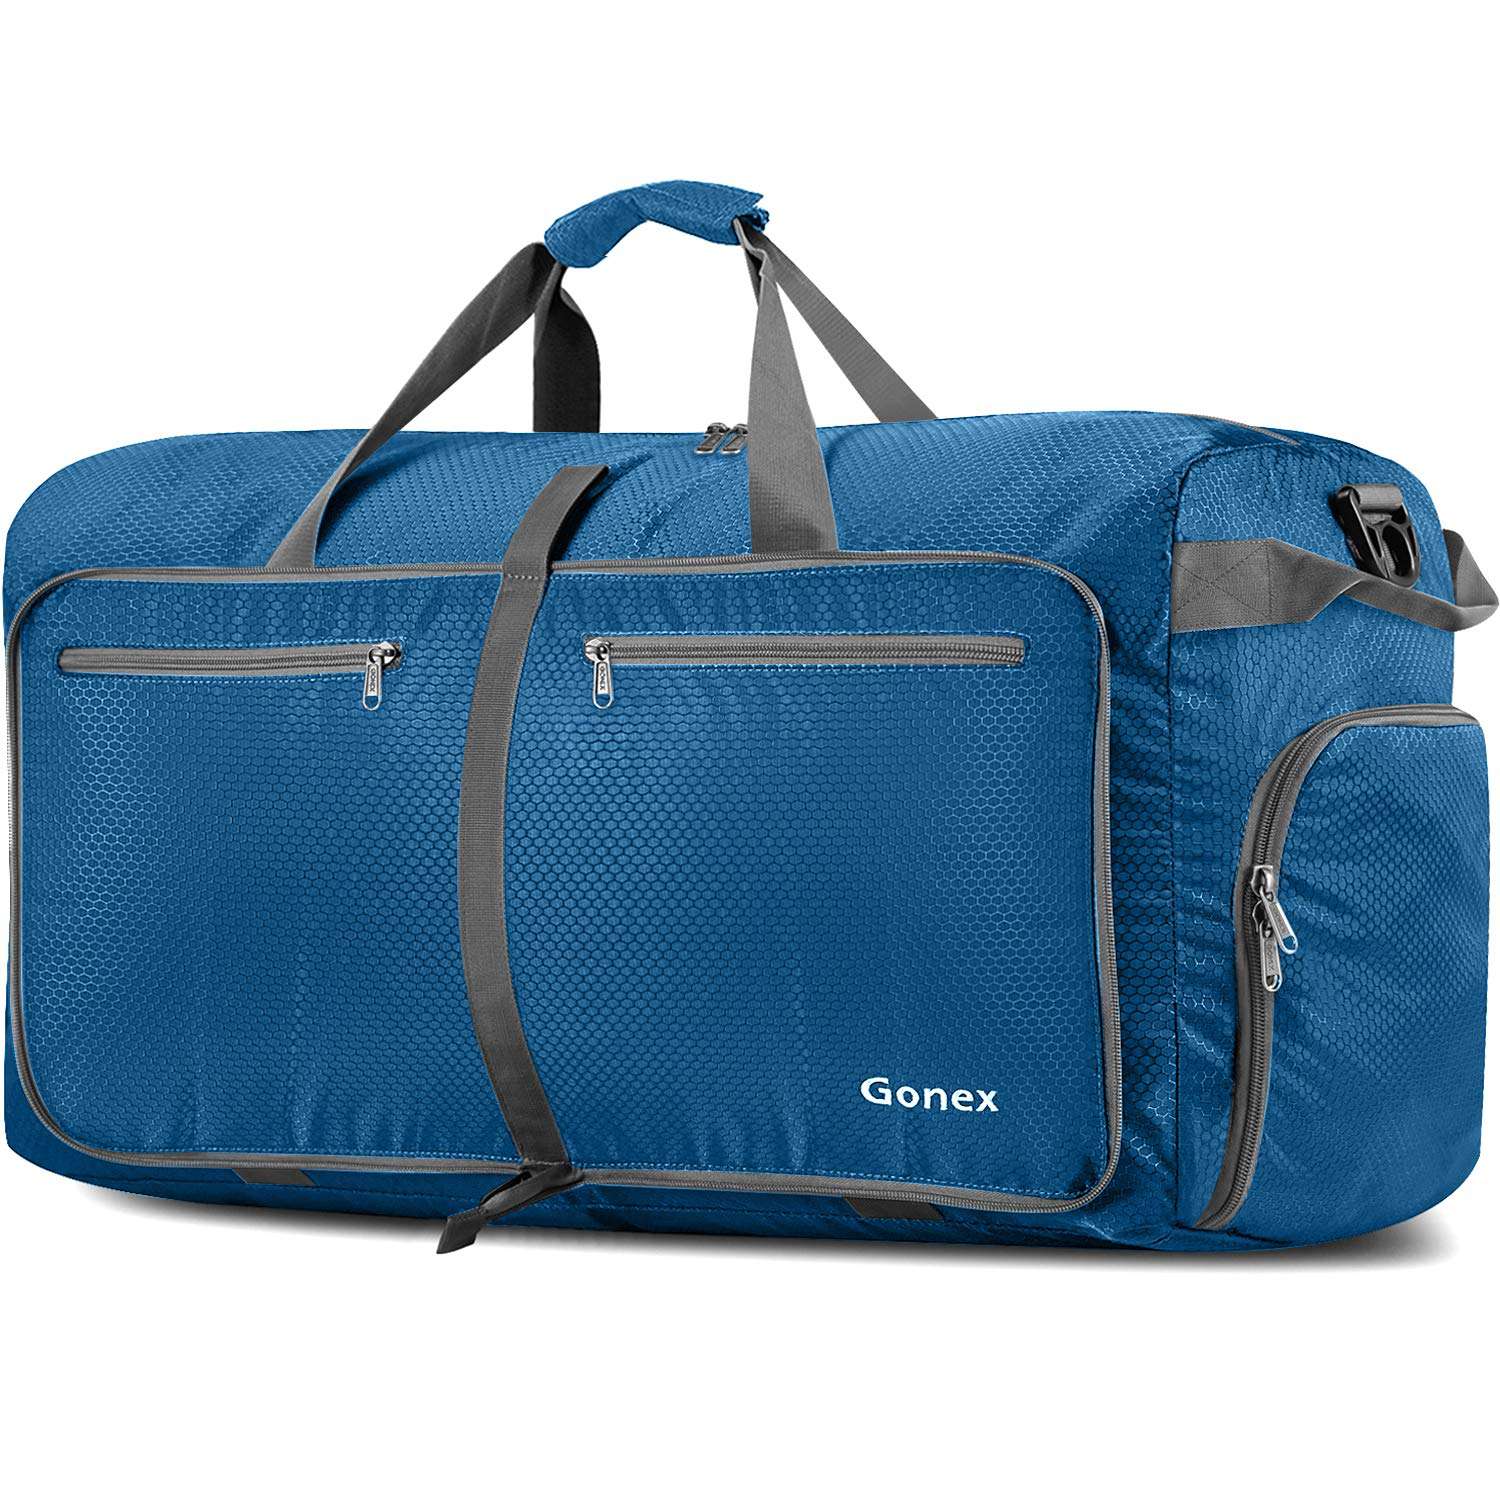 Gonex 80L packable travel duffle bag